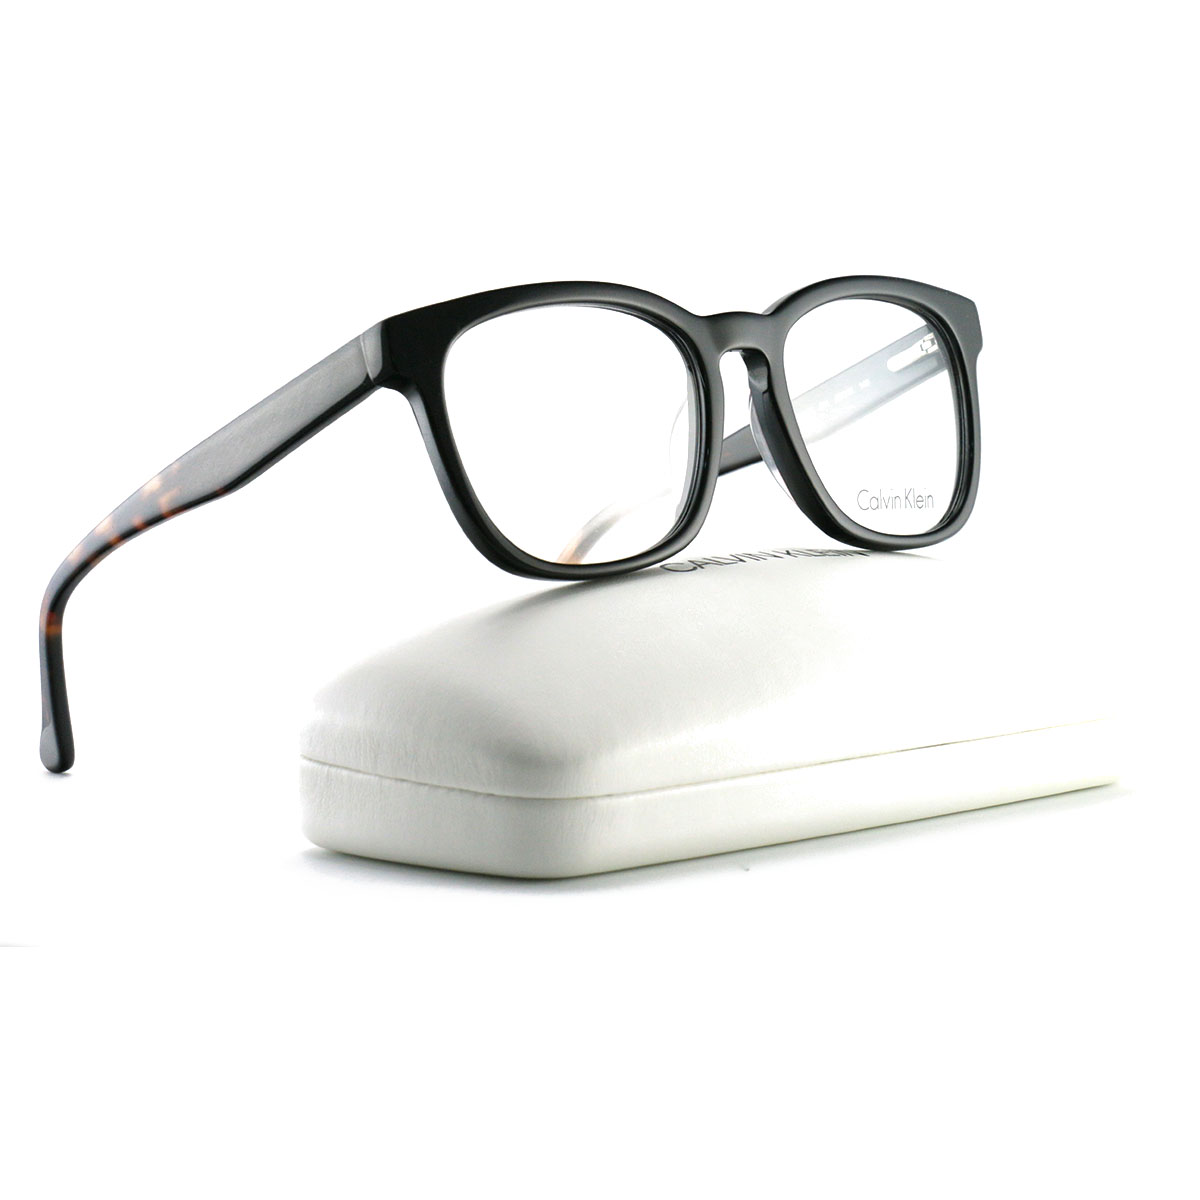 Calvin Klein Unisex's Eyeglasses CK5942 001 Black 52 18 140 Demo Lens